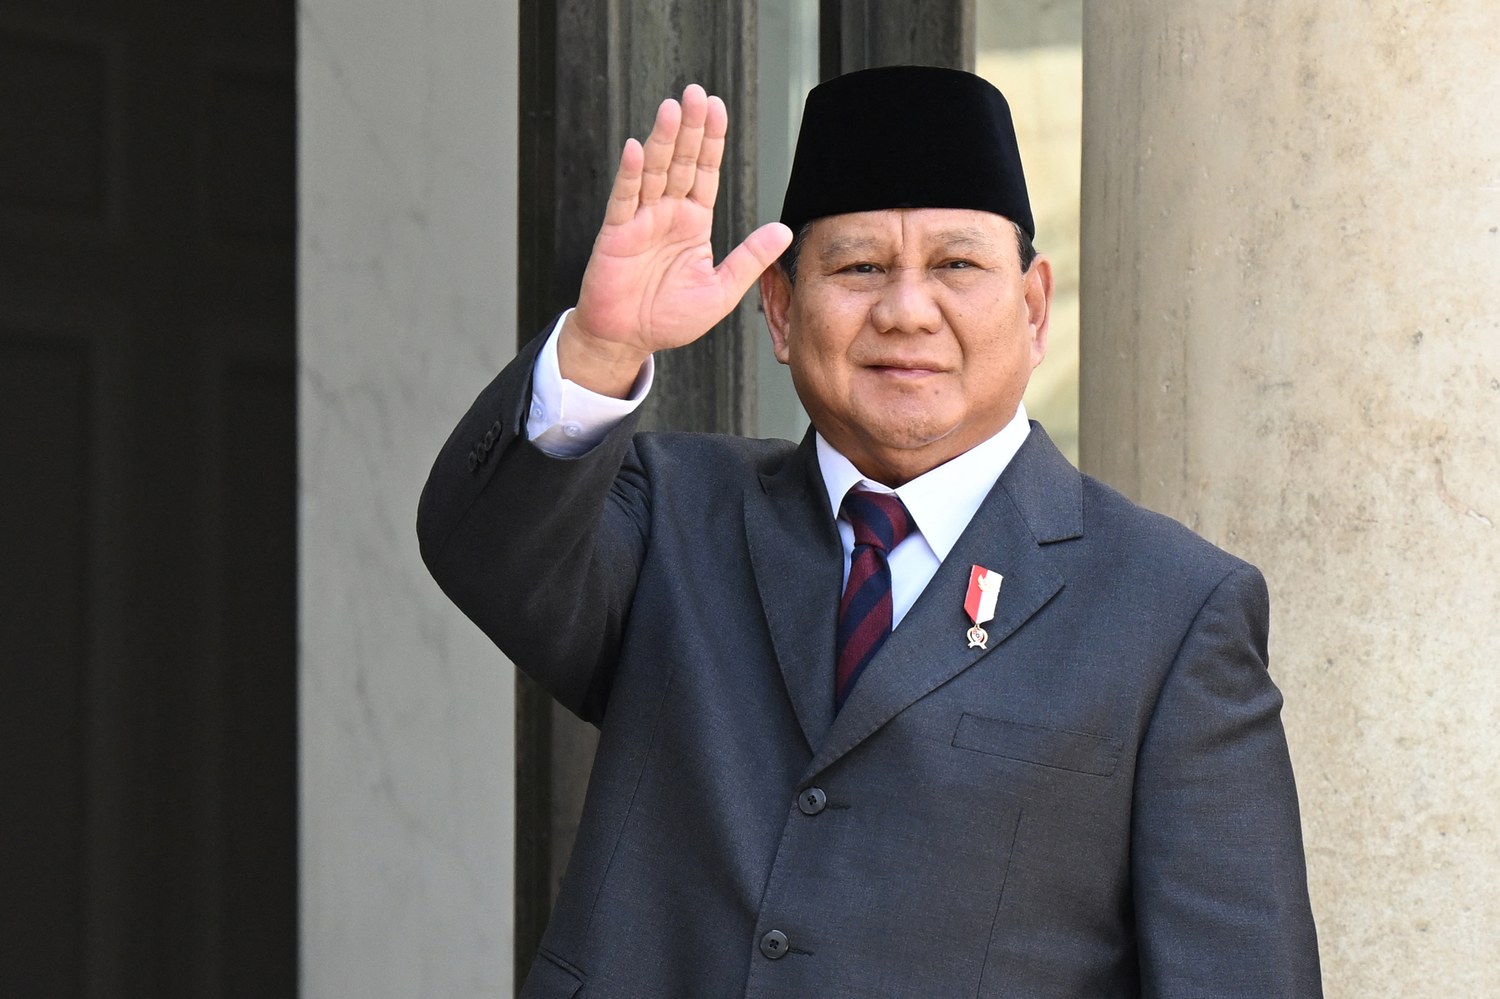 La campagna elettorale dell’Indonesia interessa molto anche a Washington